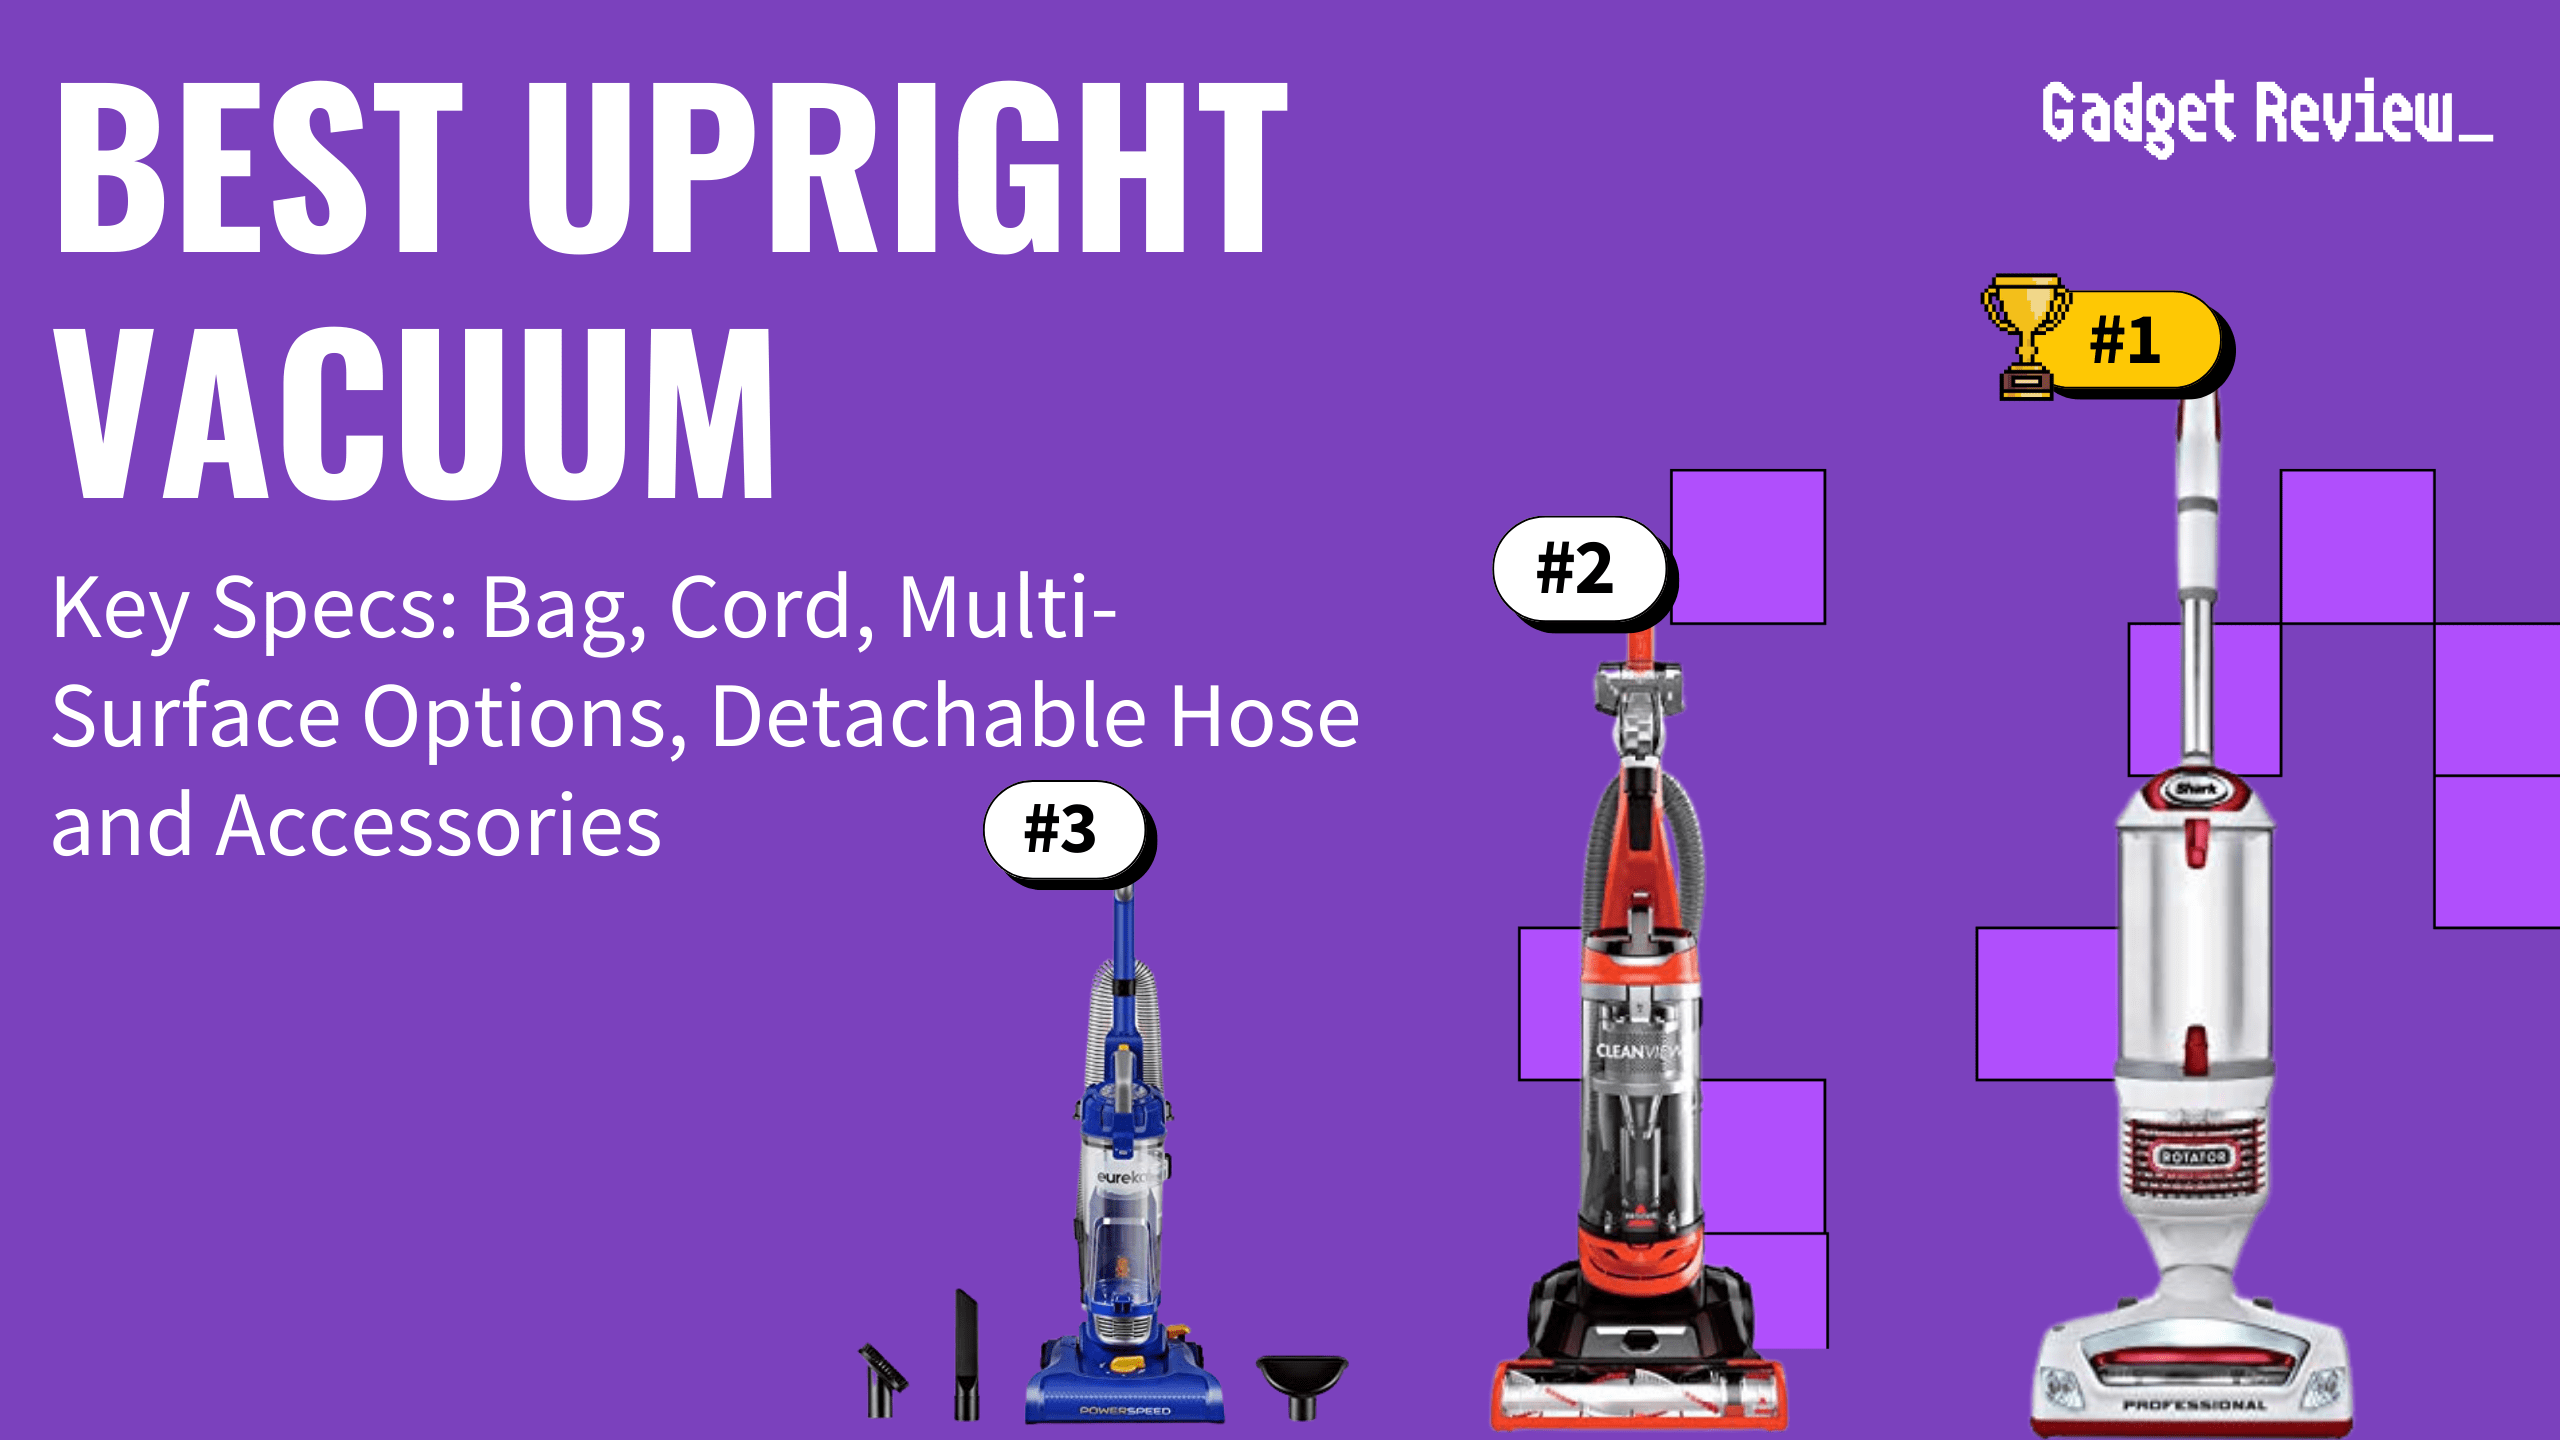 Best Upright Vacuum